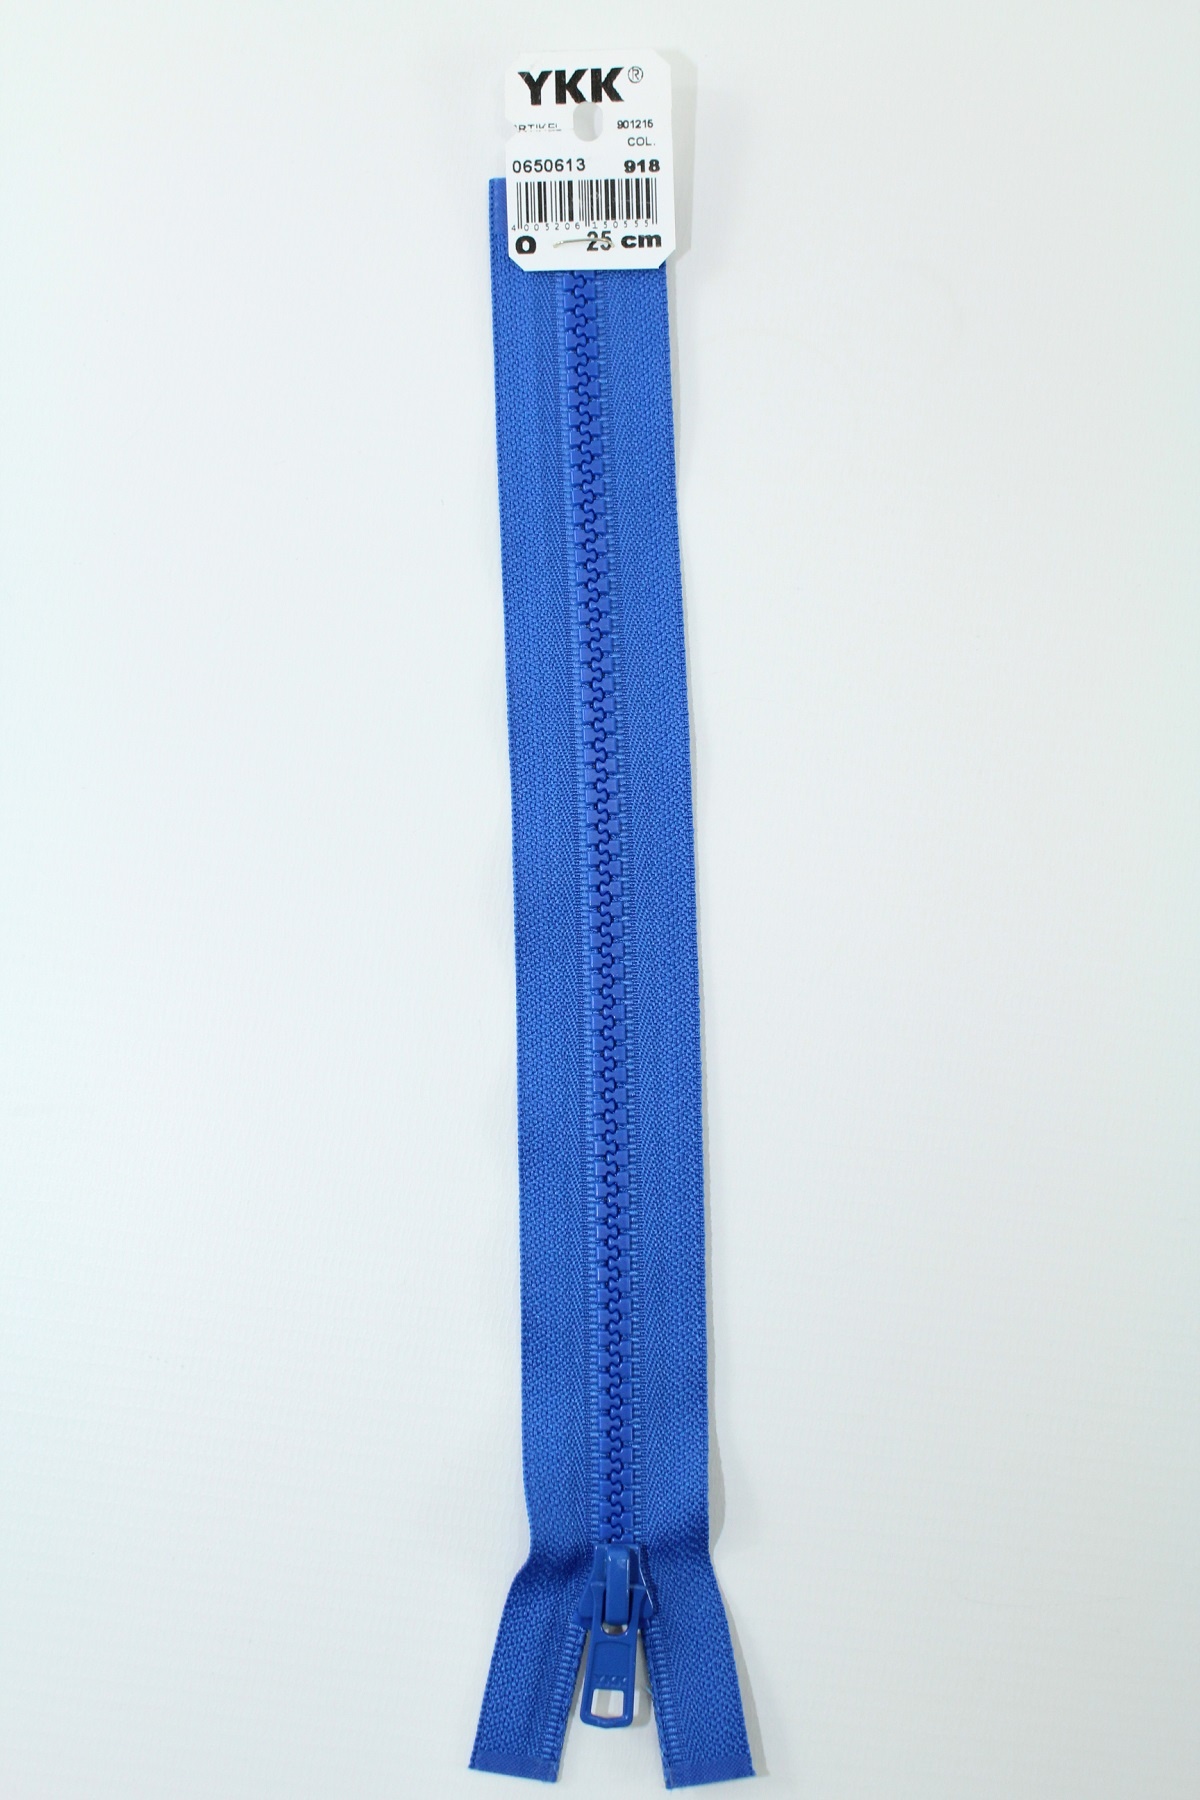 YKK - Reissverschlüsse 25 cm - 80 cm, teilbar, königsblau